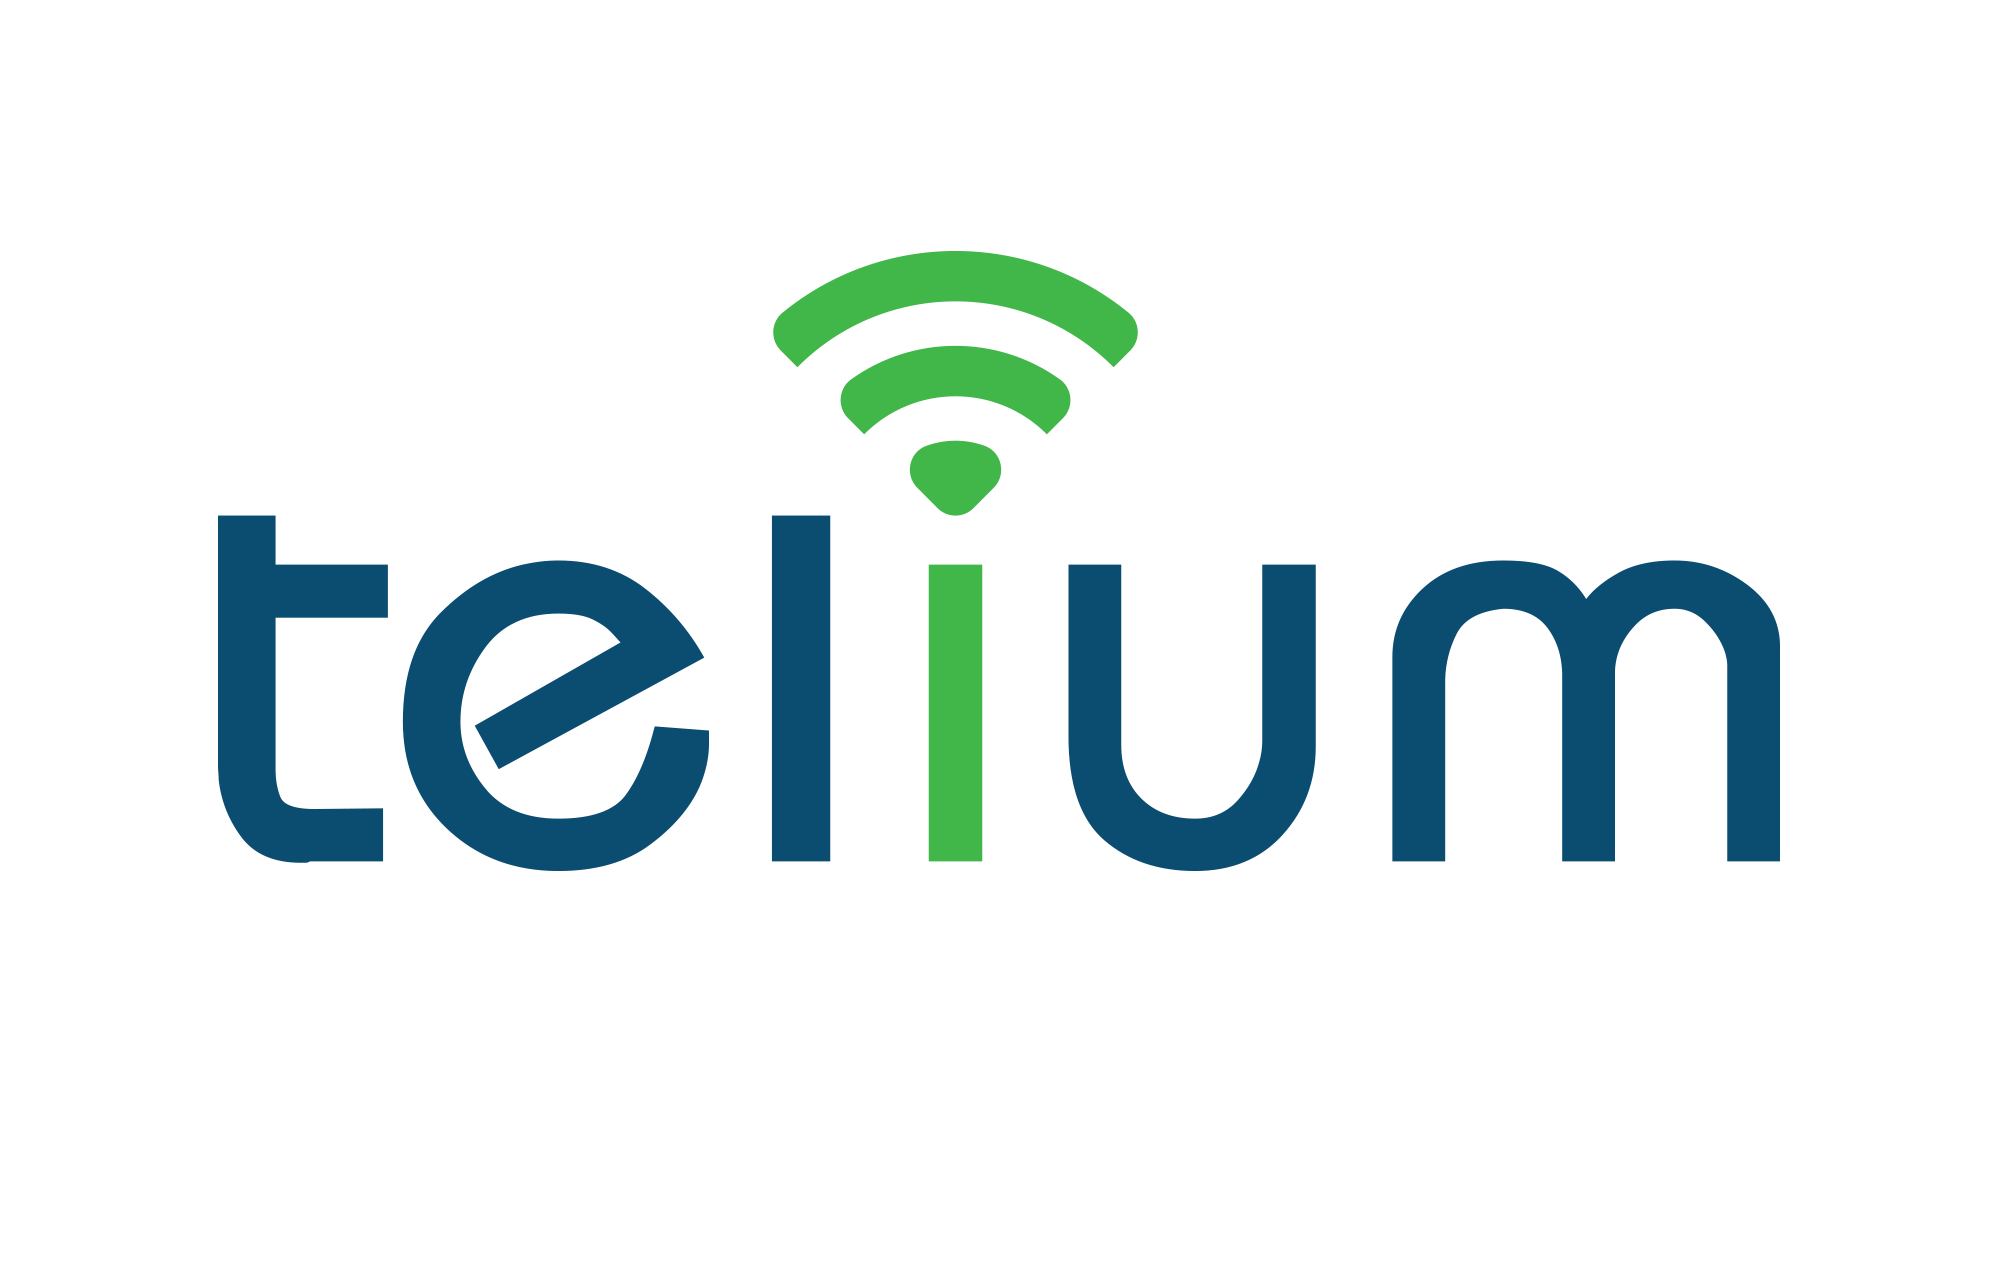 Telium